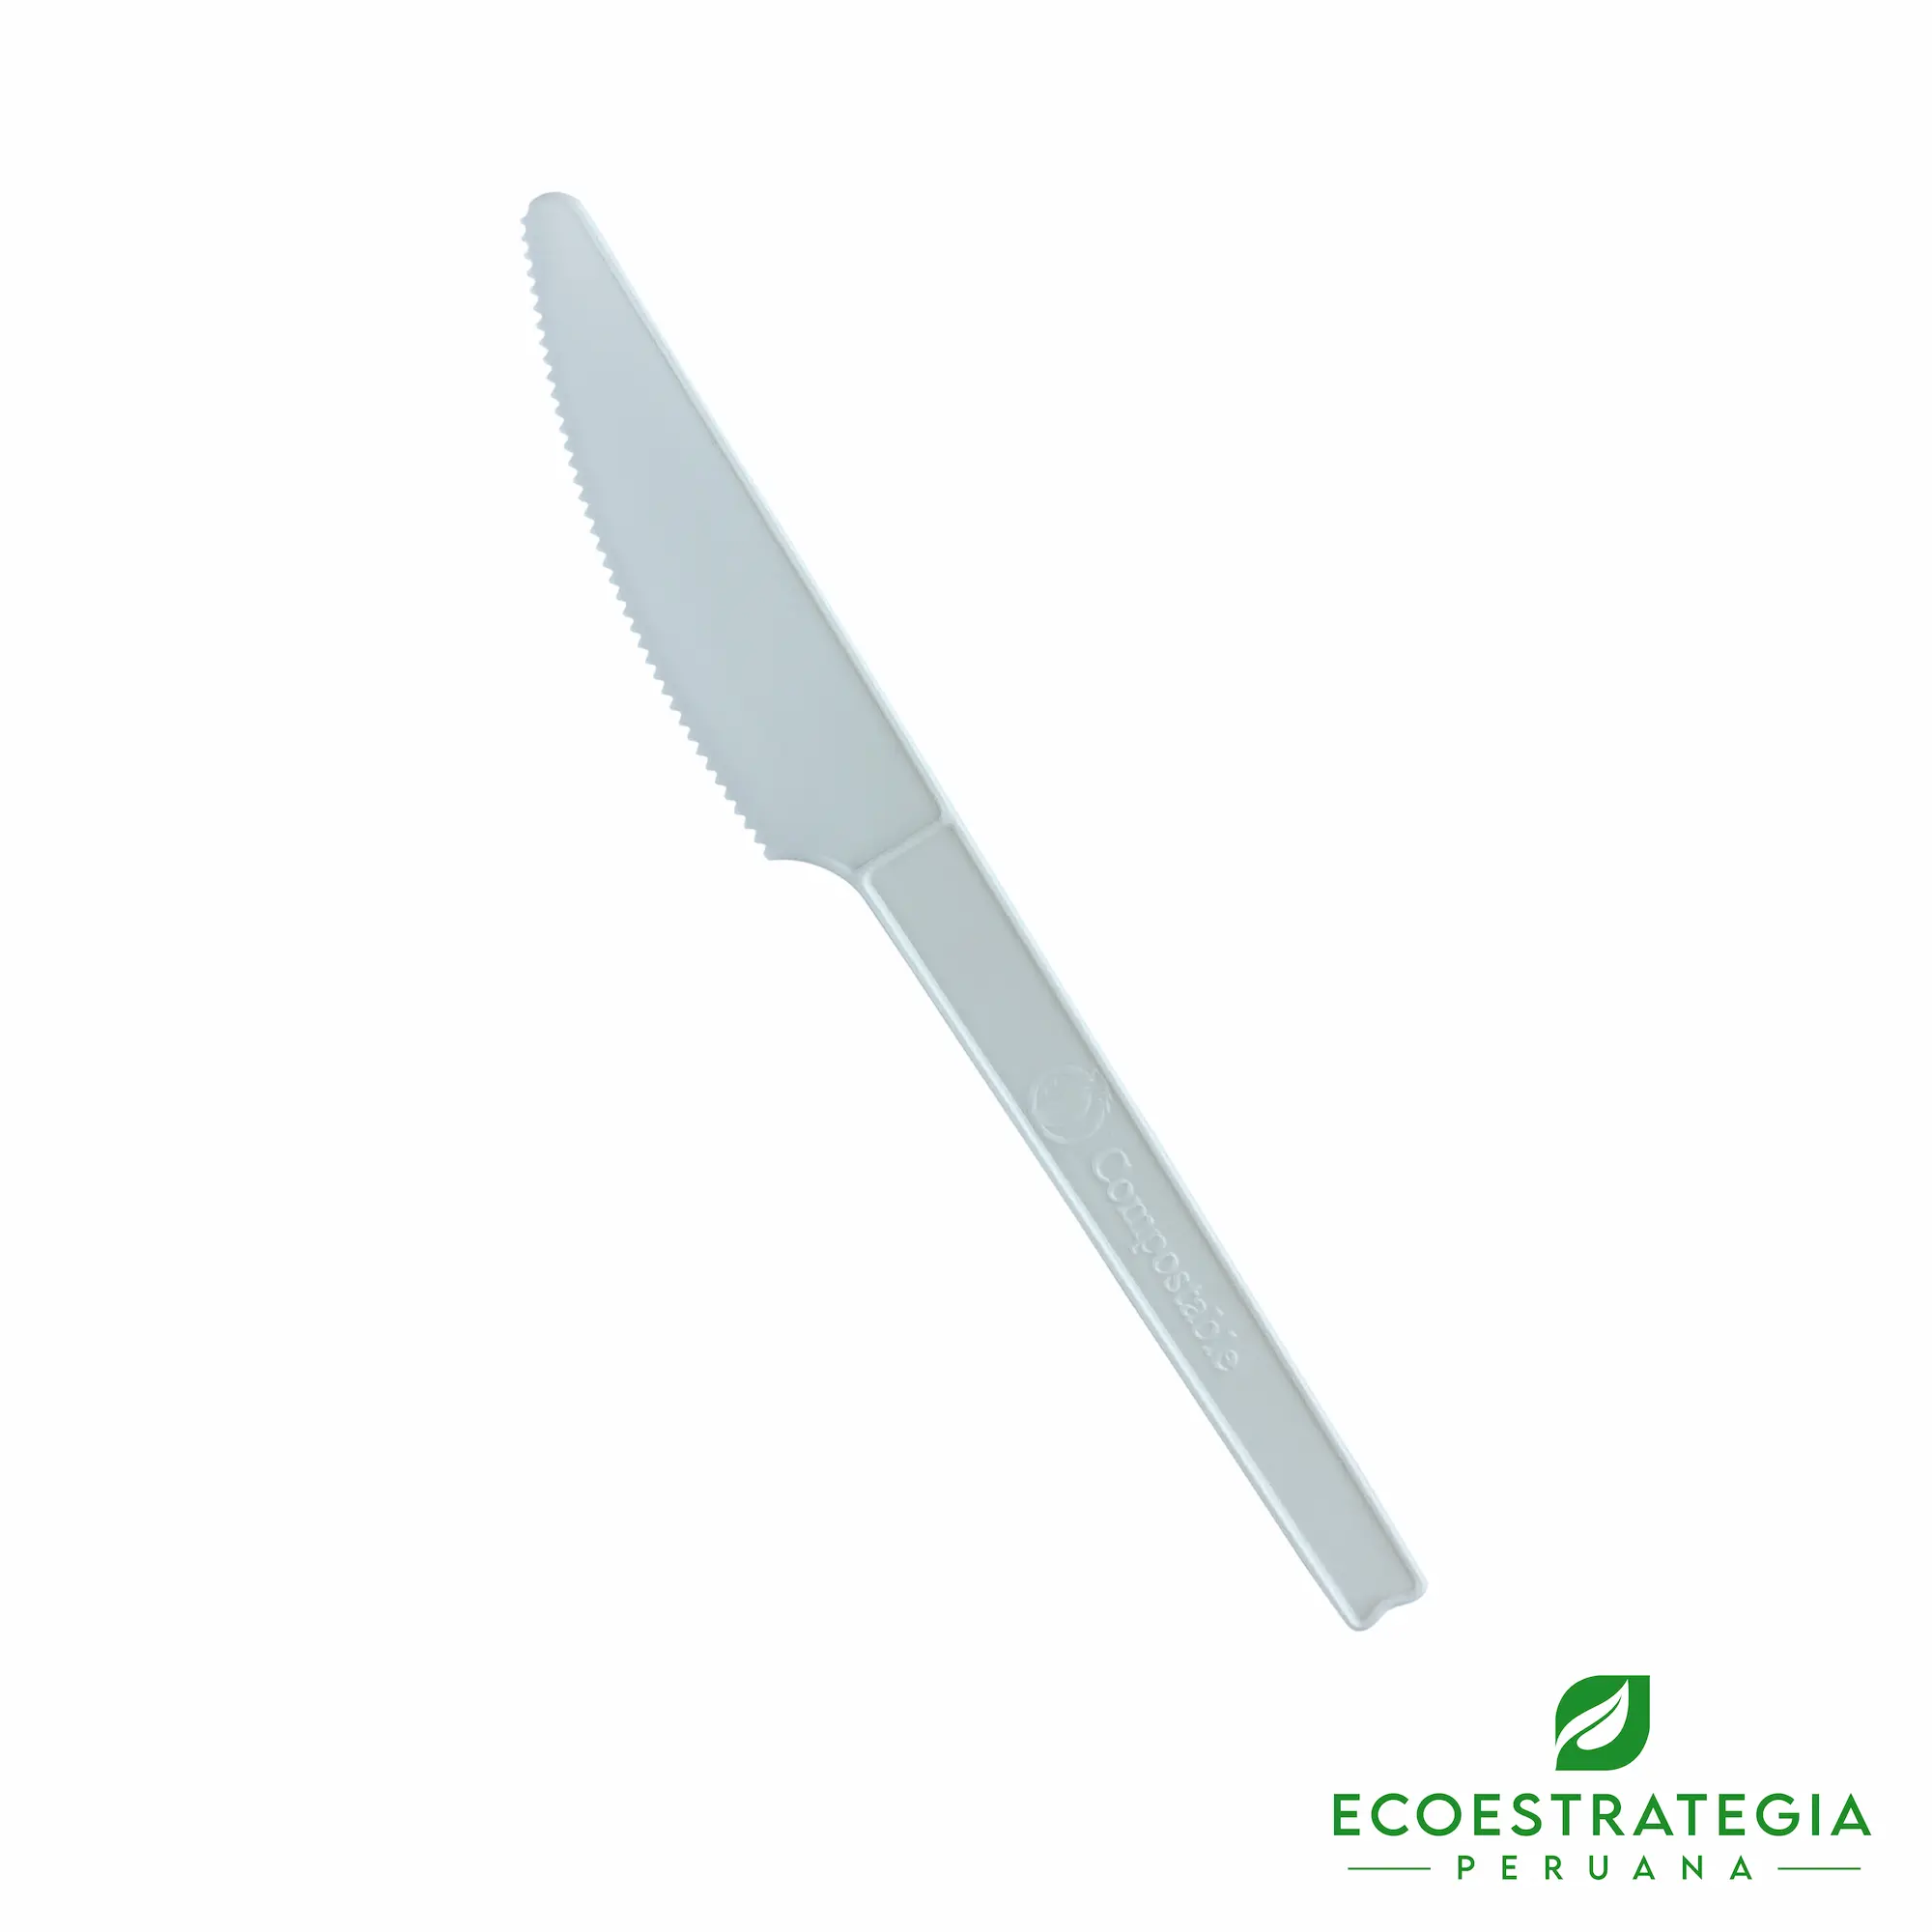 El cuchillo biodegradable EP-L es un cubierto descartable ecologico y desechable hechos a base de fecula de maíz